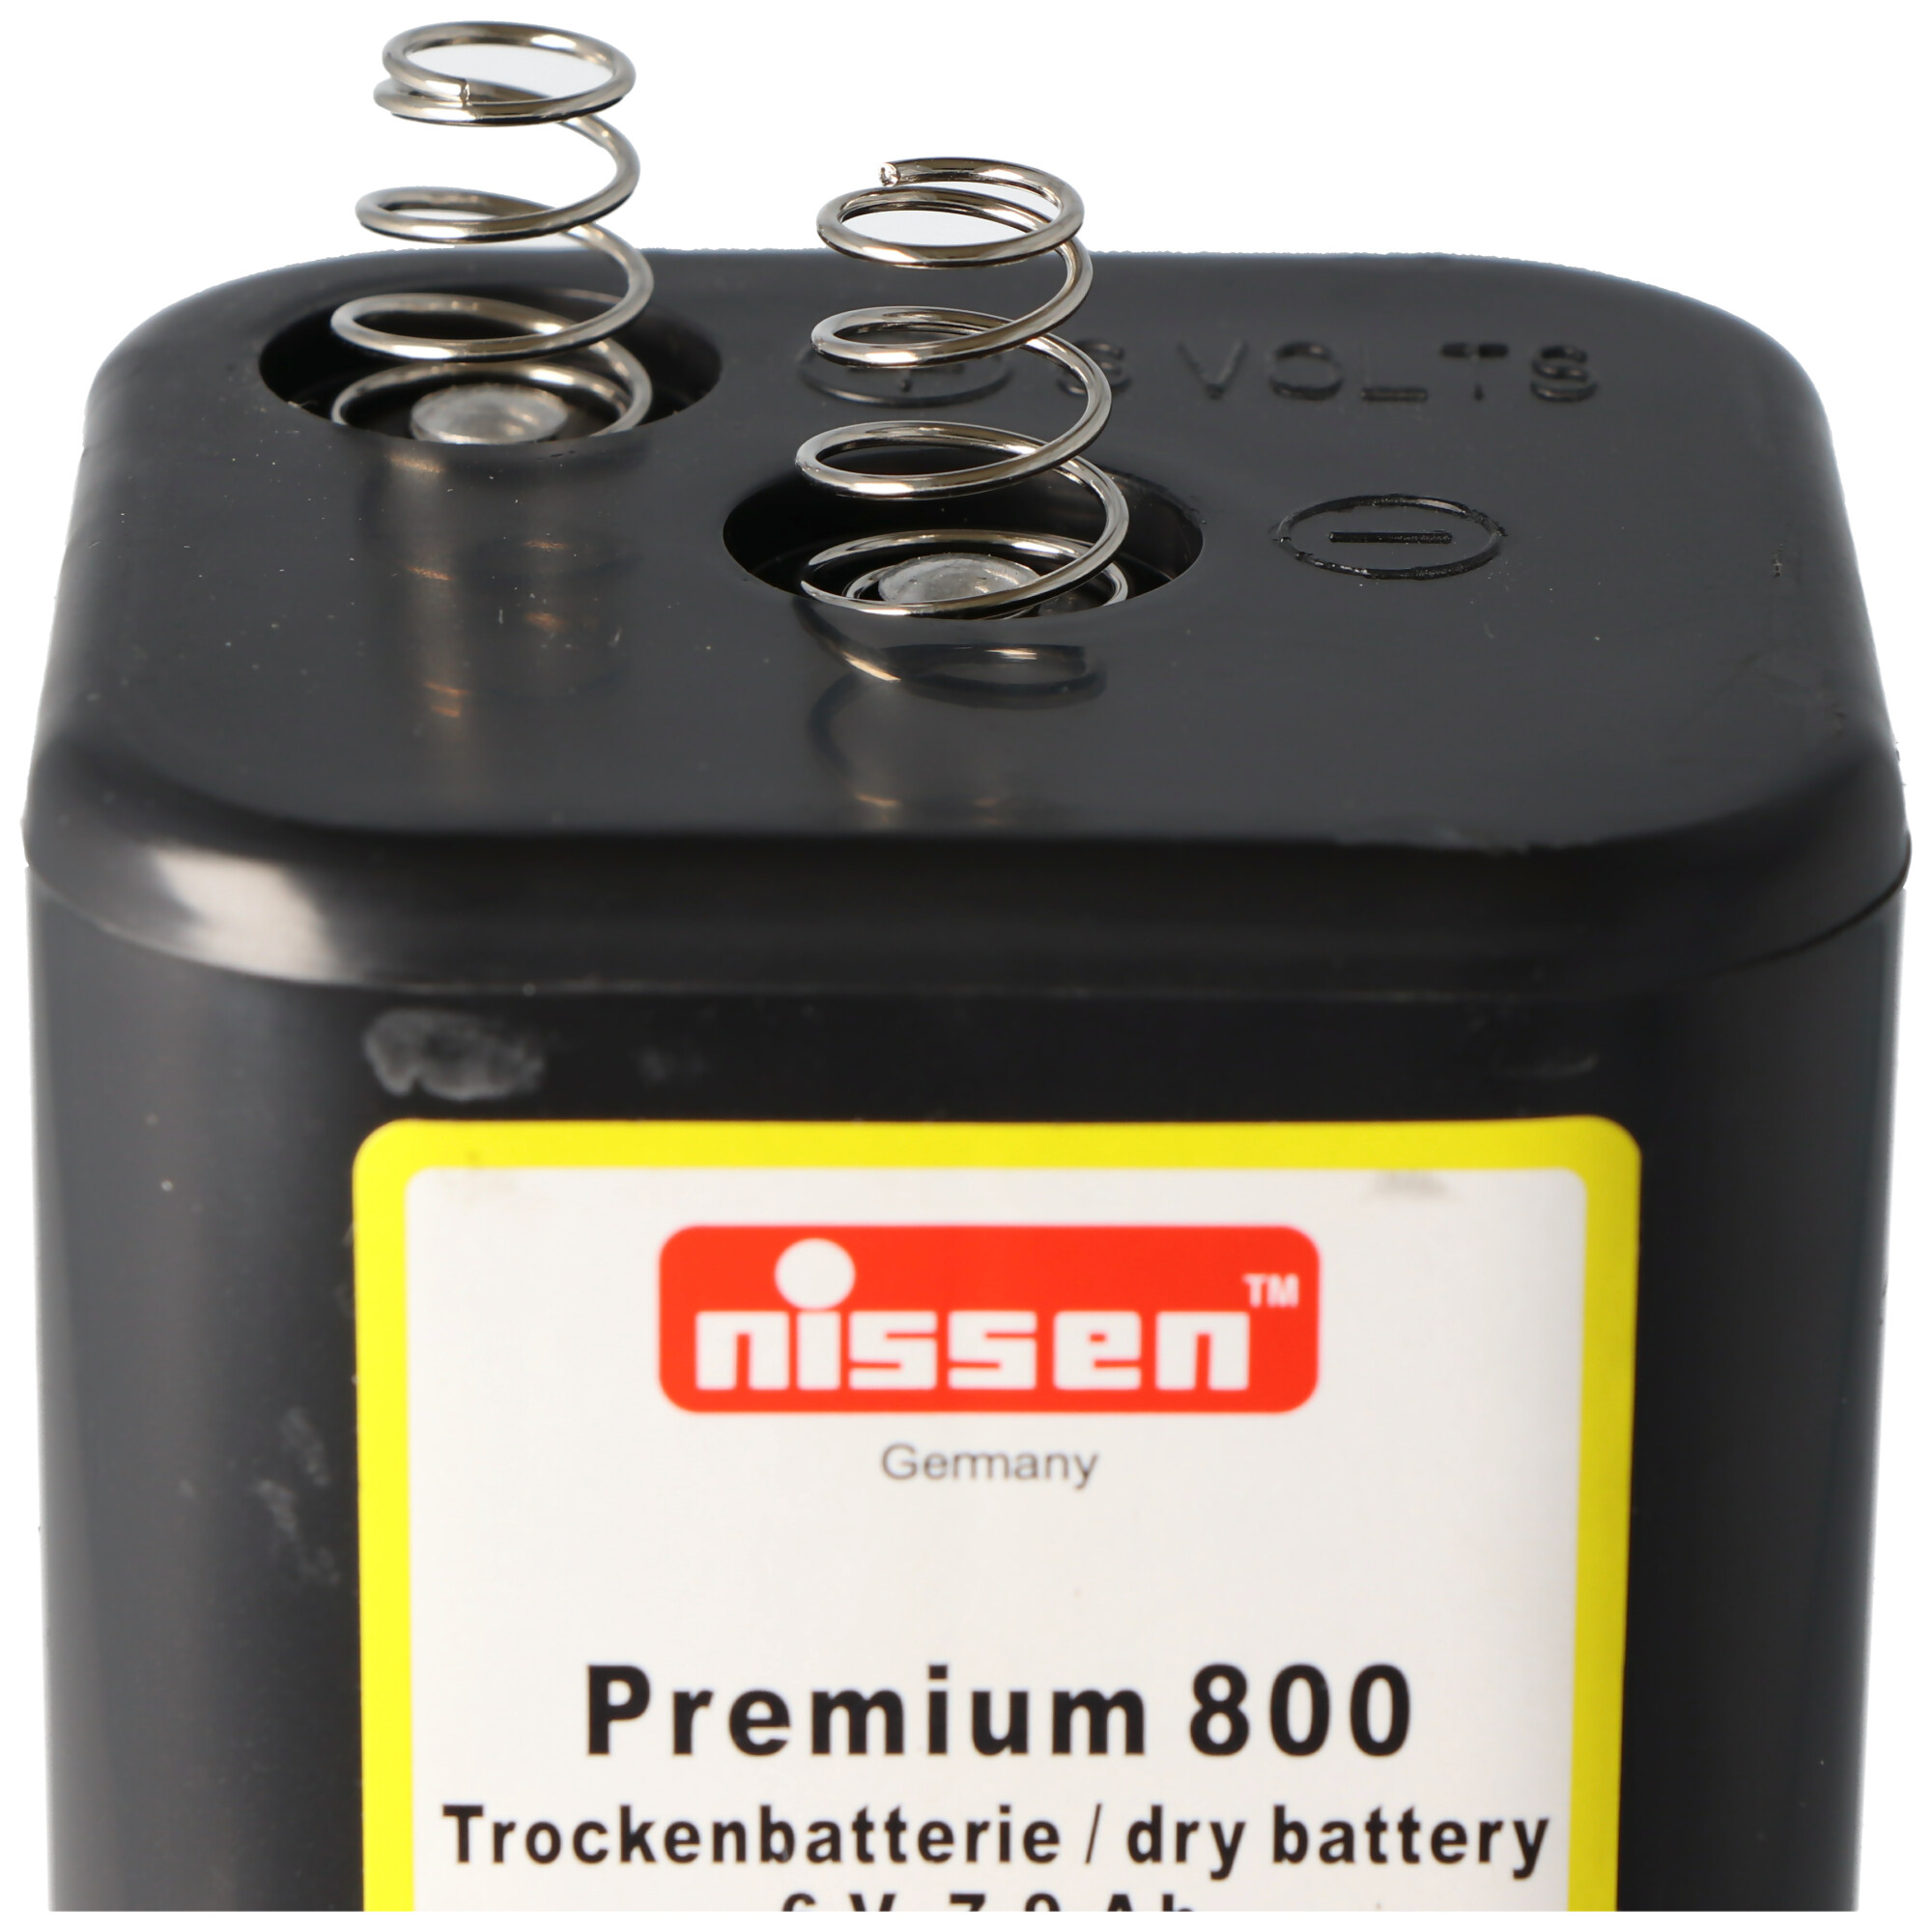 Nissen Premium 800 4R25 Batterie 6 Volt max. 9000mAh Kapazität, Trockenbatterie Nissen 4R25 ohne Quecksilber und Cadmium